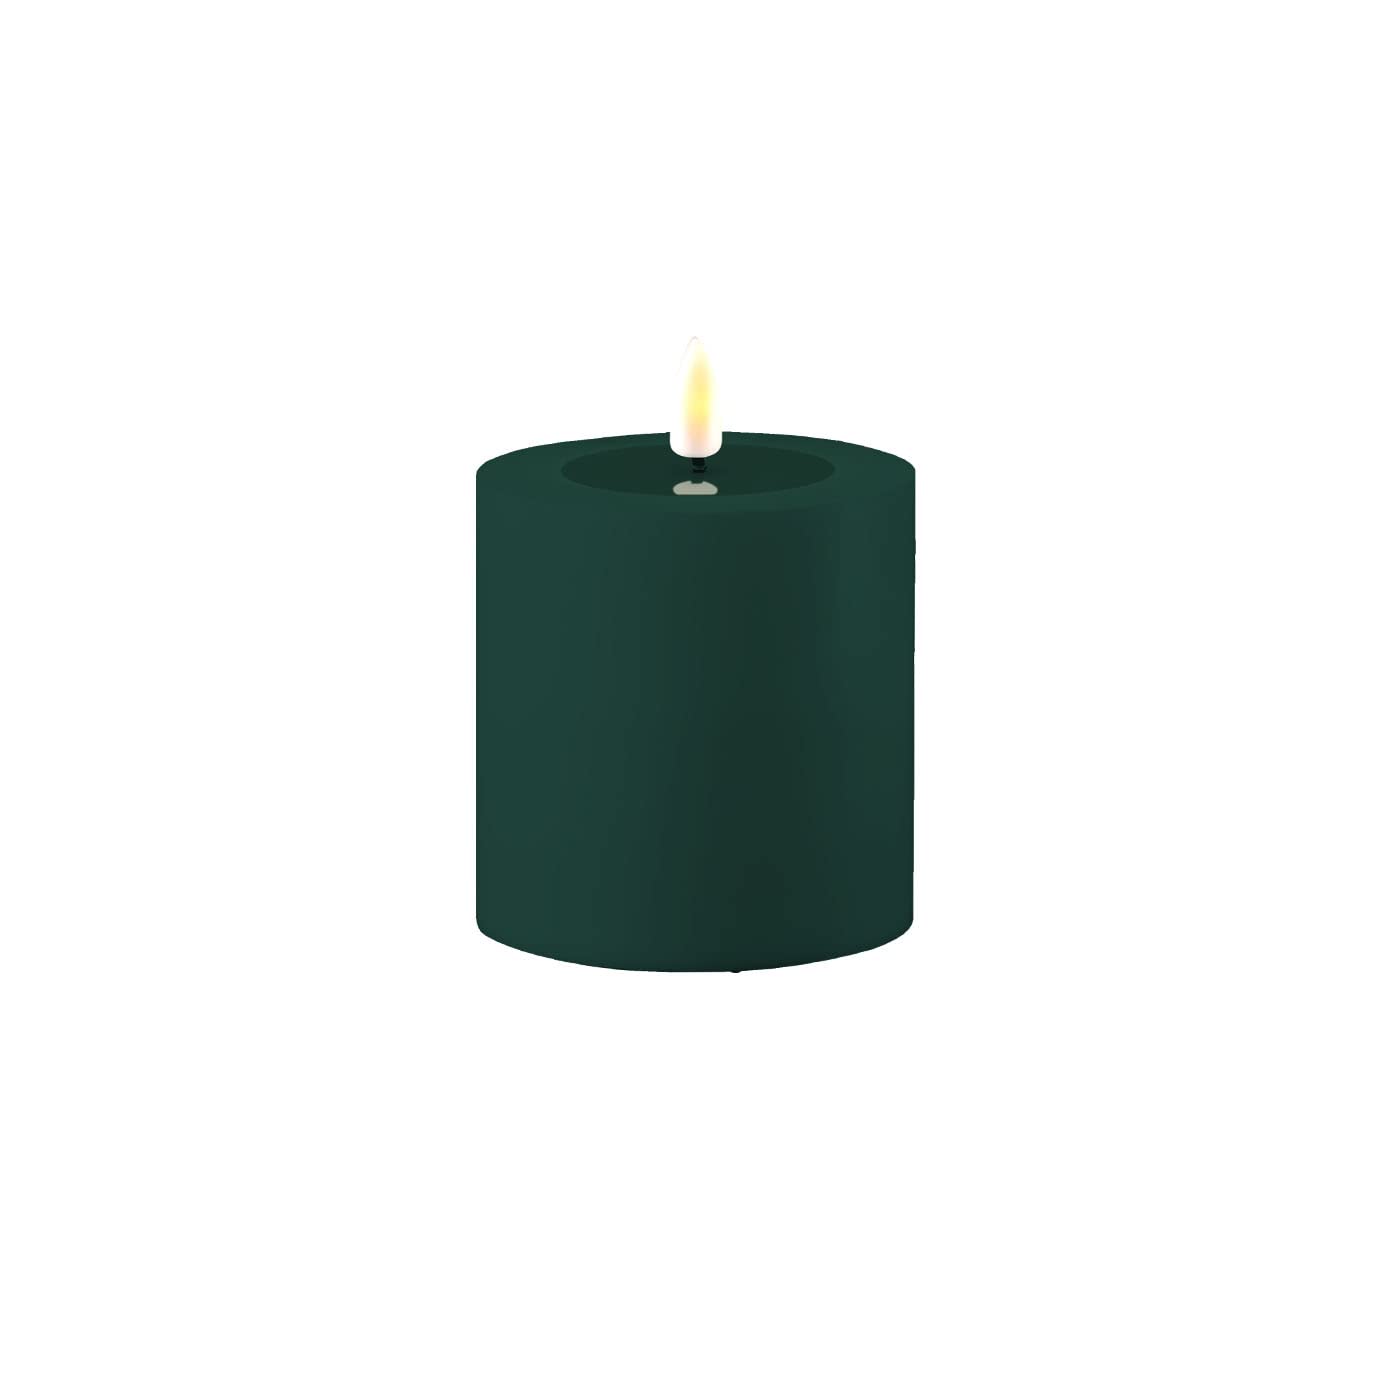 ReWu LED Kerze Deluxe Homeart, Outdoor LED Kerze (Kunststoff – Kein Echtwachs) mit realistischer Flamme, warmweißes Licht, Hitzebeständig für den Aussenbereich– (Dunkel Grün)